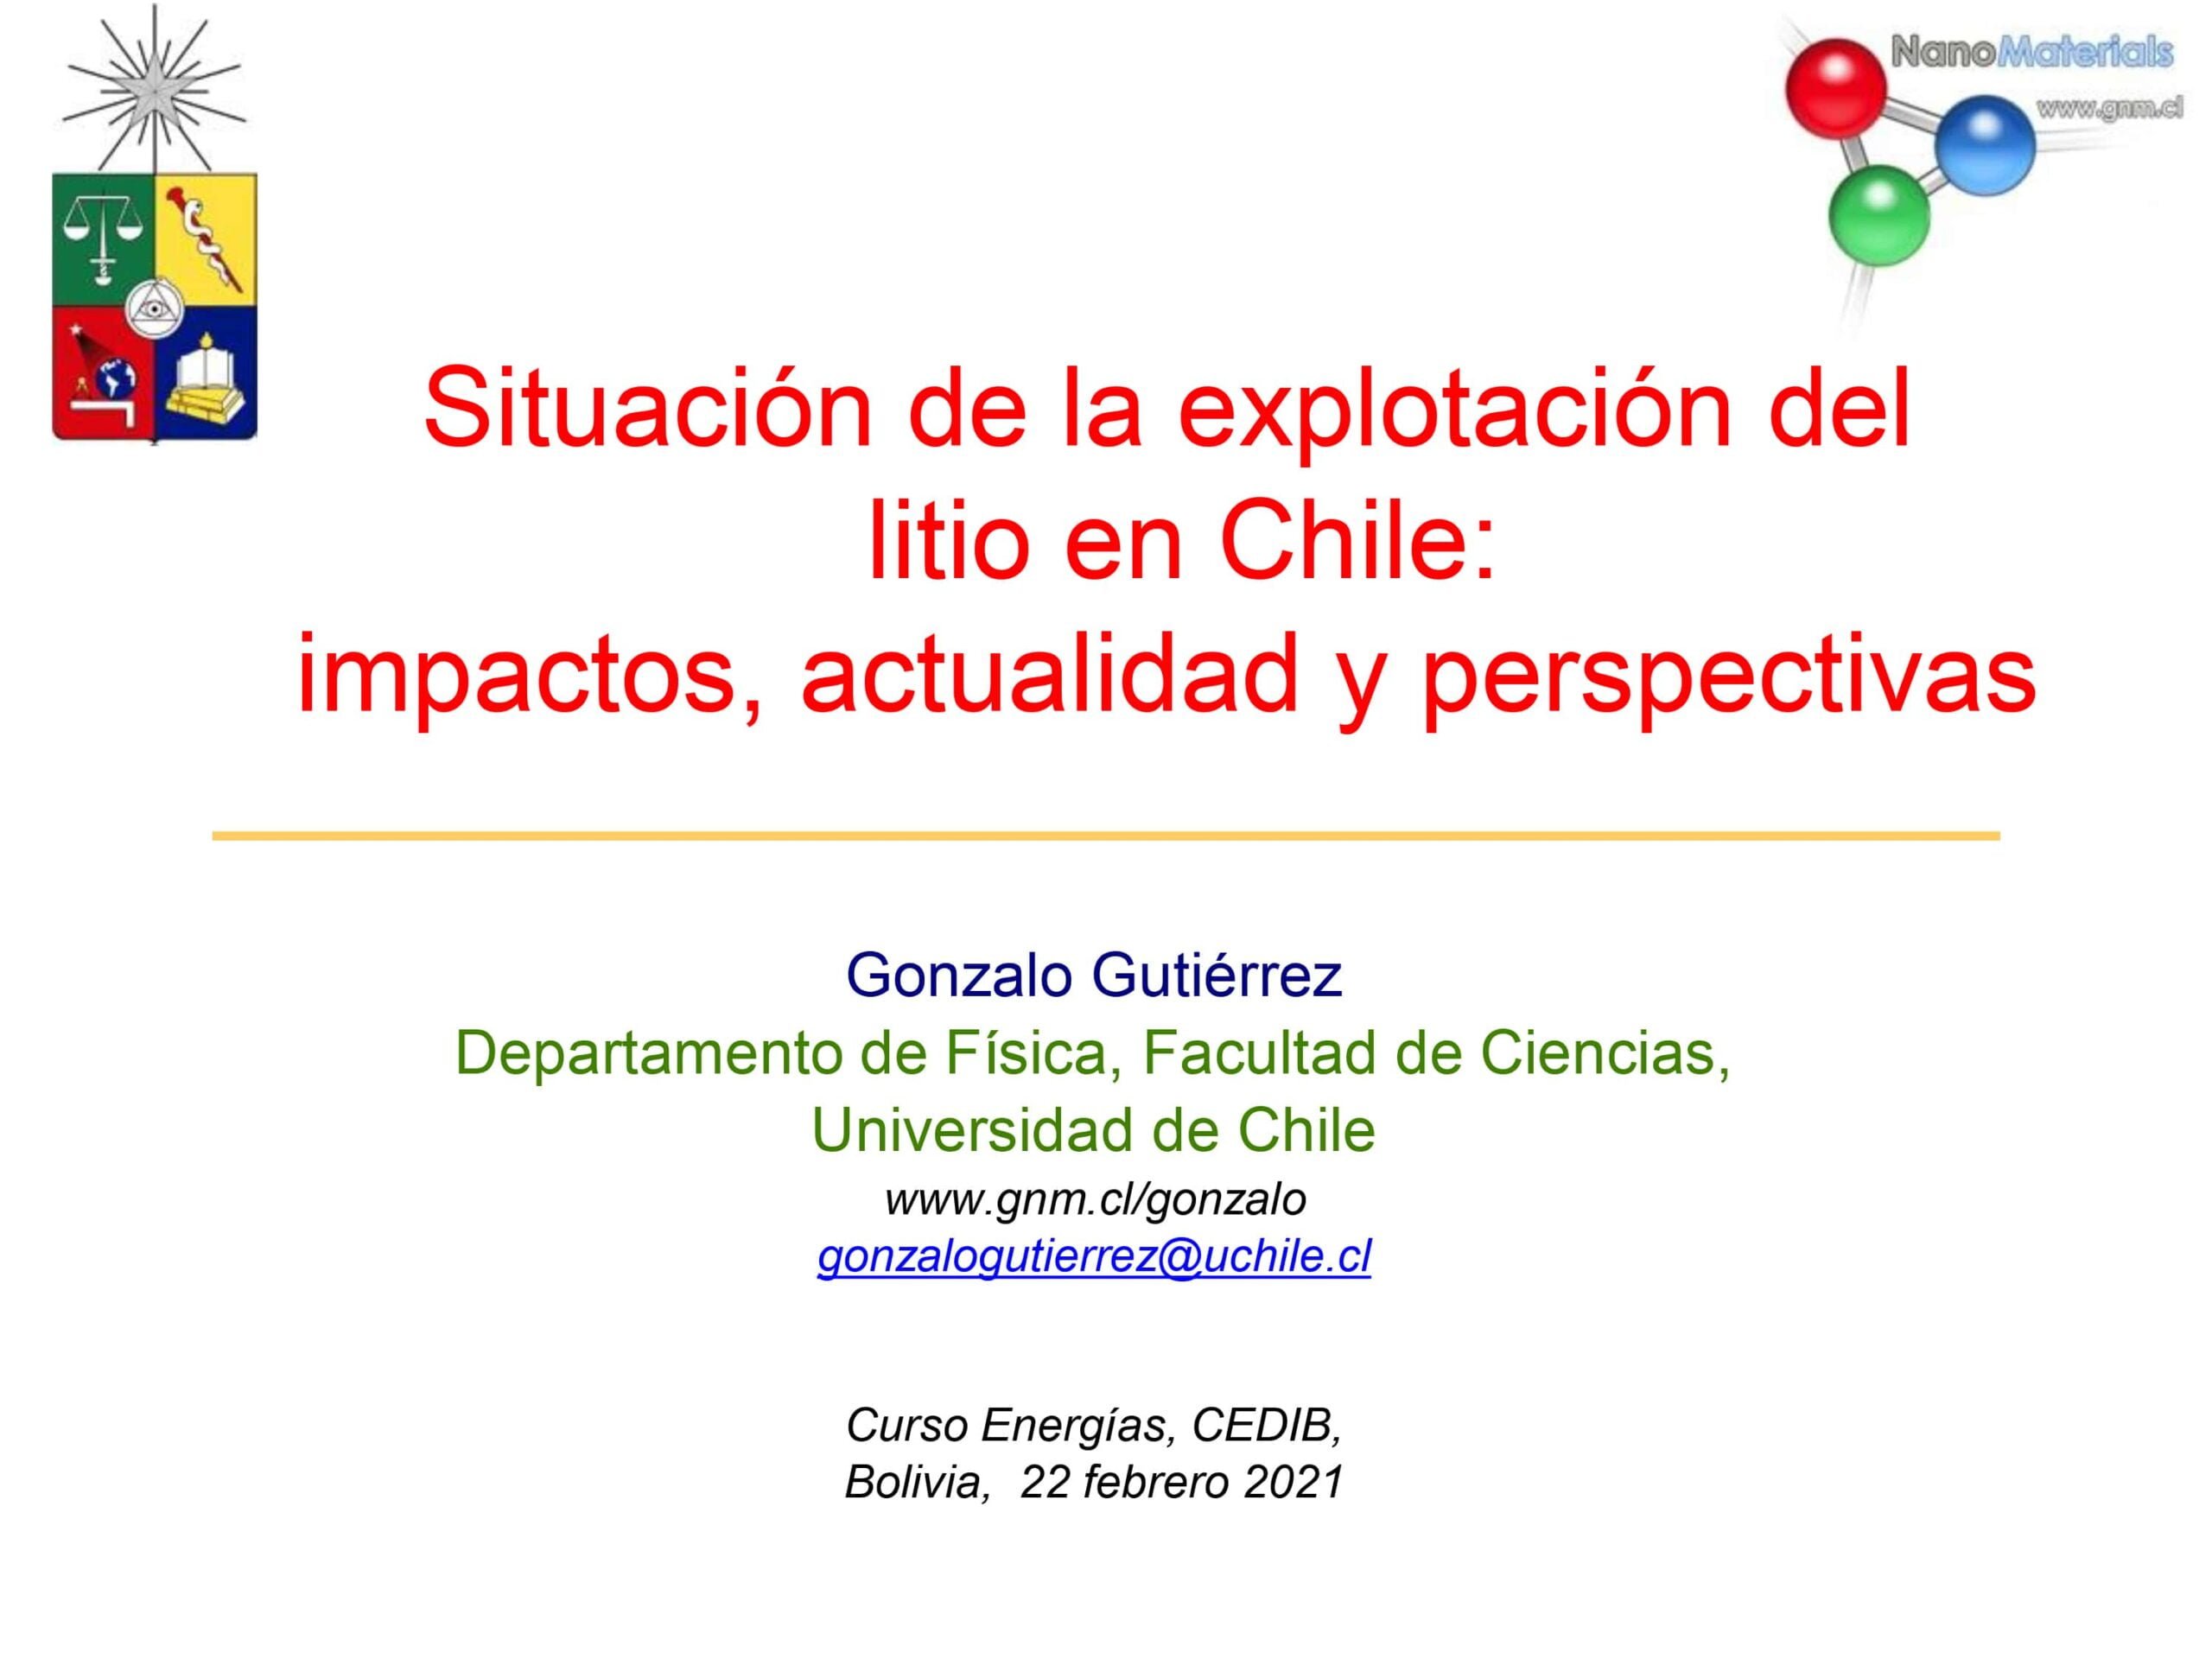 Situación de la explotación del litio en Chile: impactos, actualidad y perspectivas